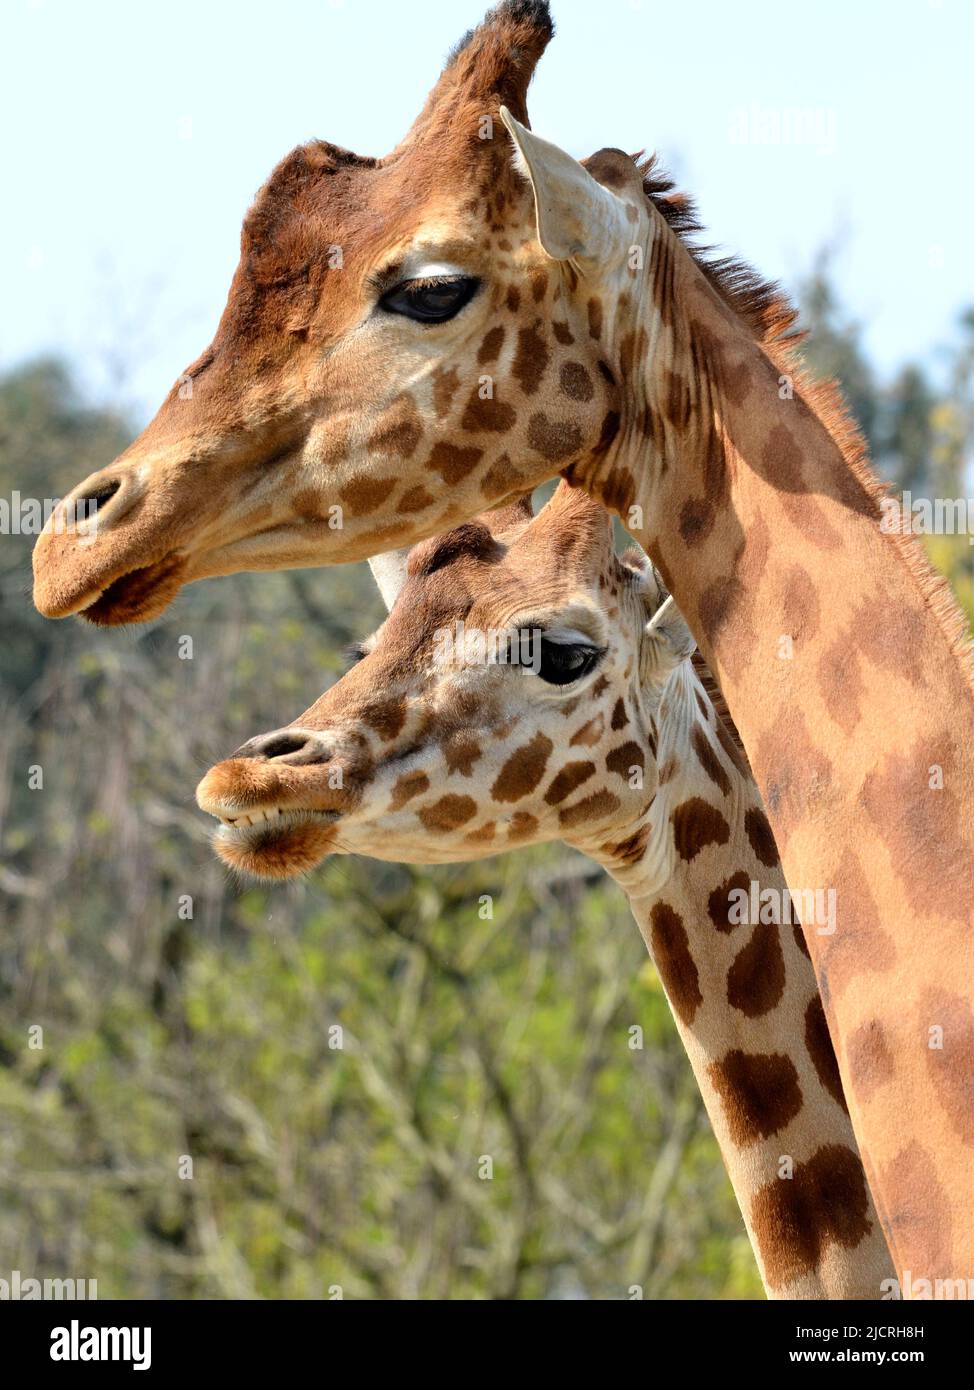 Closeup of two giraffes (Giraffa camelopardalis) Stock Photo